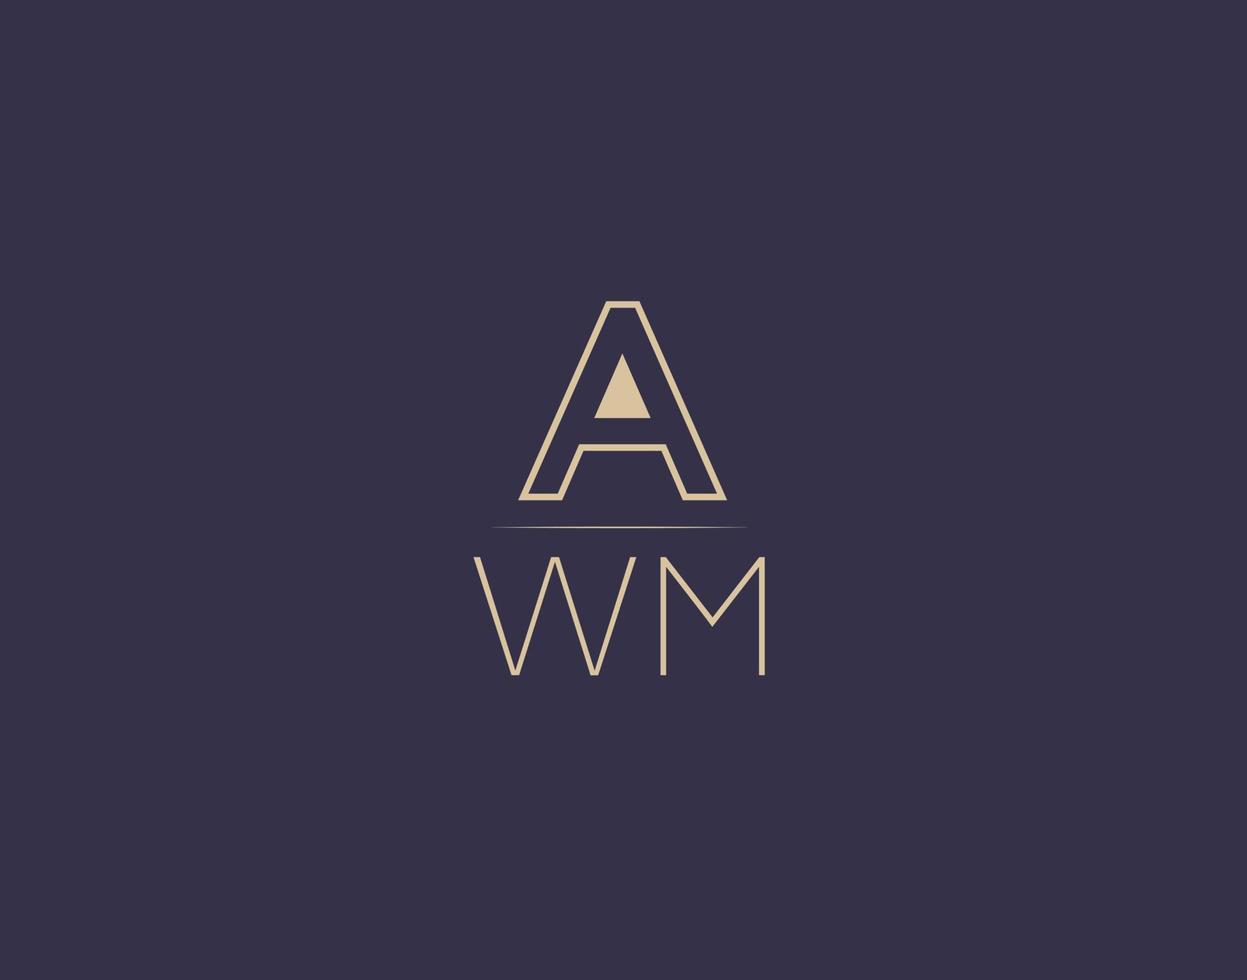 awm carta logotipo diseño moderno minimalista vector imágenes